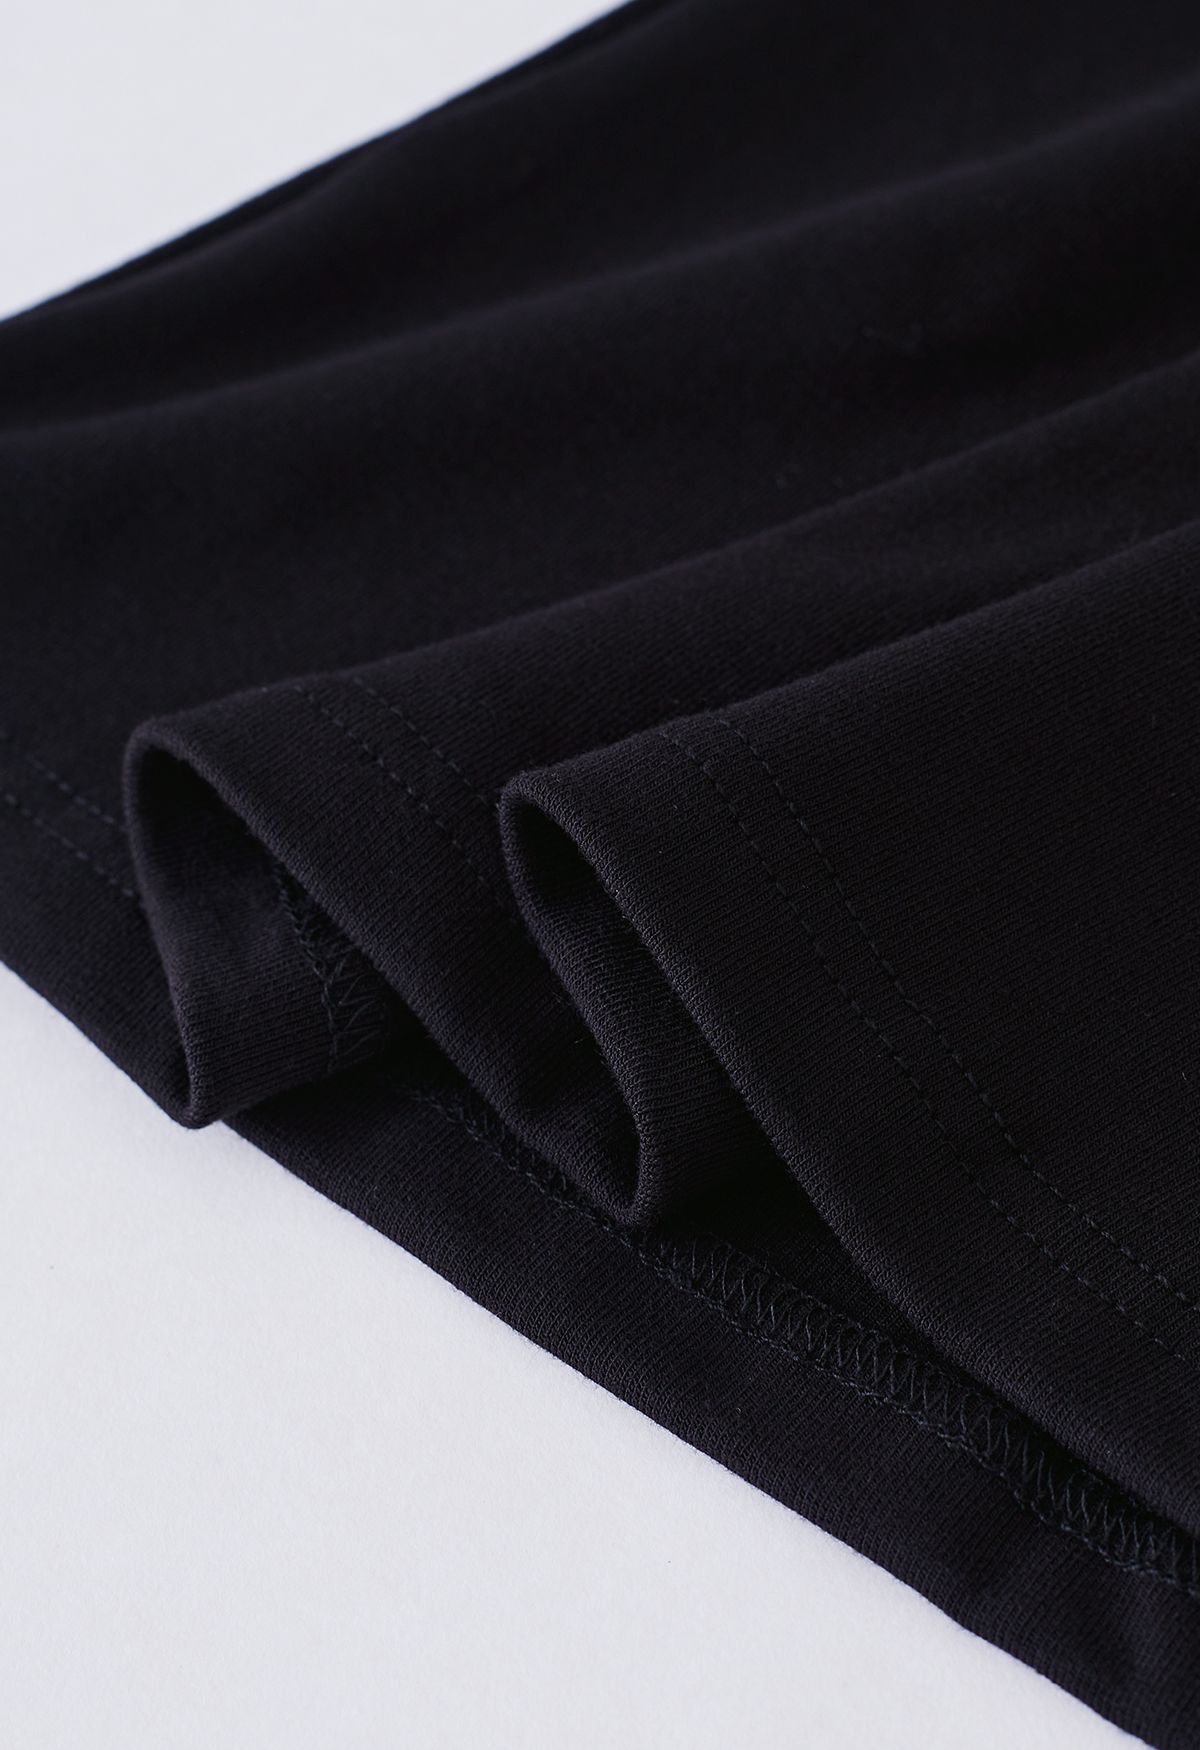 Seam Detail Soft Cotton Top in Black